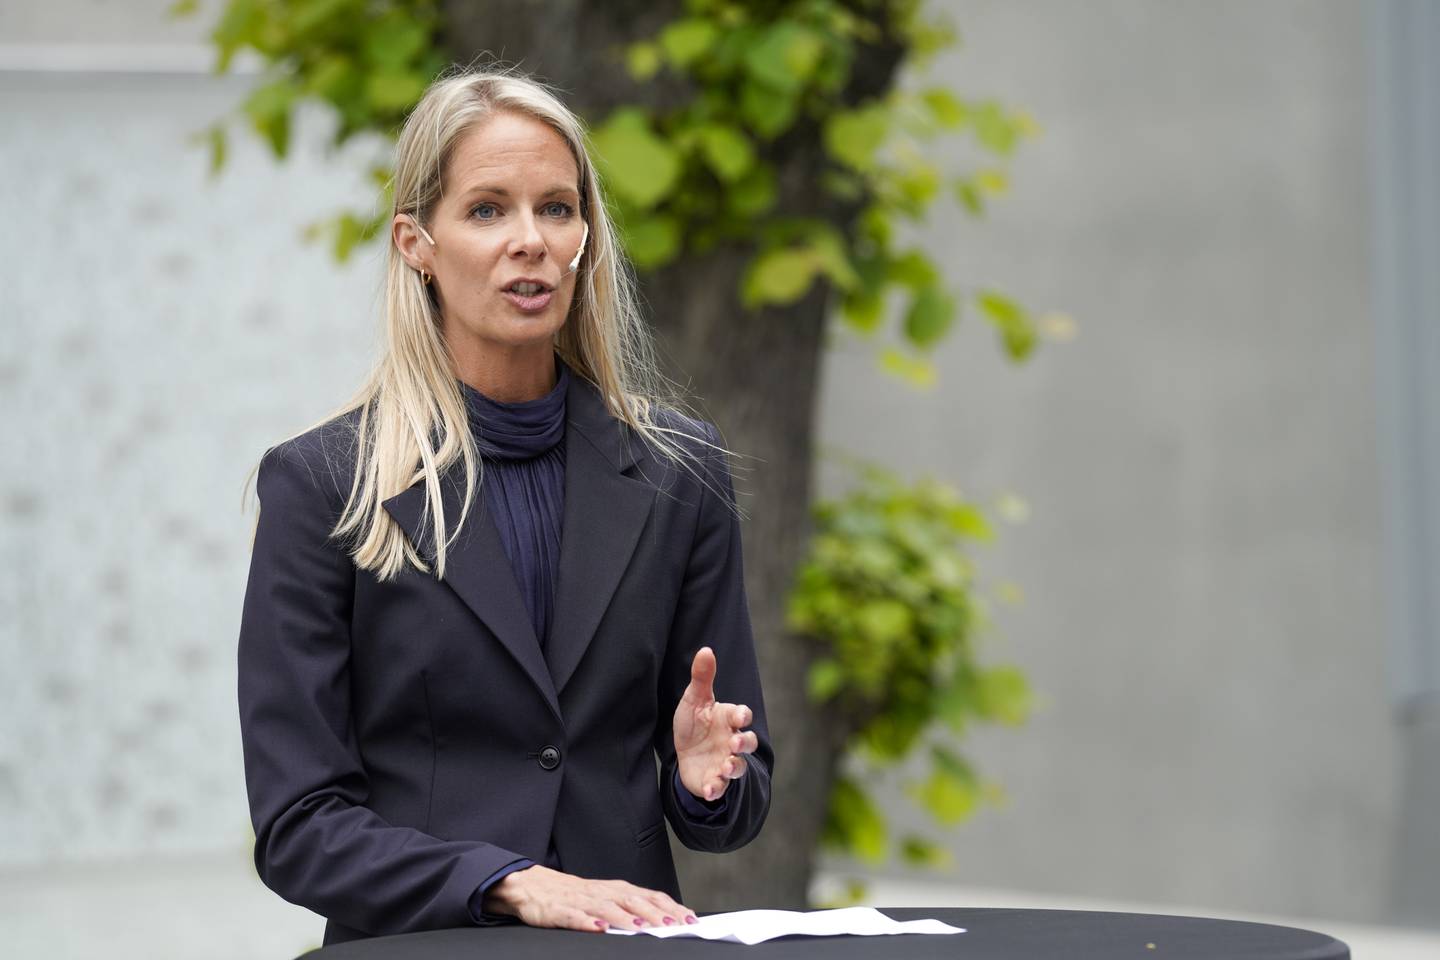 Oslo 20220610. 
Kommisjonens leder Cathrine Thorleifsson under pressemøte om ny ekstremismekommisjon ved 22. juli-minnesmerket på Johan Nygaardsvolds plass ved Høyblokka.